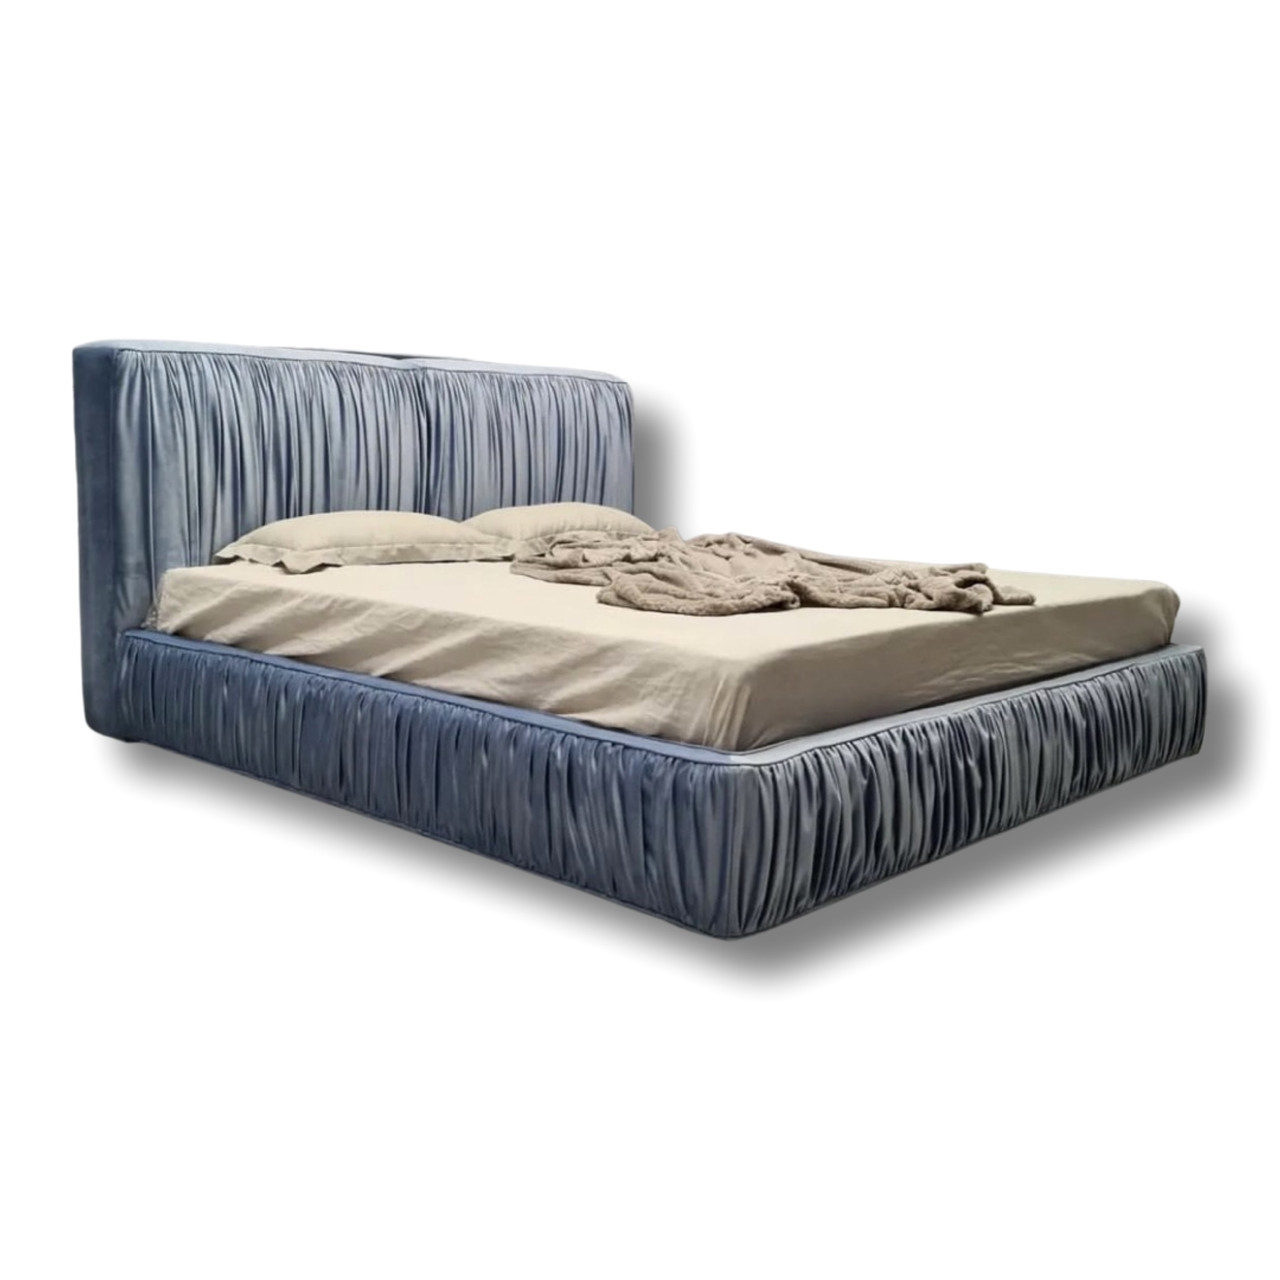 Трендове двоспальне ліжко софт м'яке на подіумі MeBelle PUFFIE-2 160х200 см, стиль шарпей, блакитний велюр